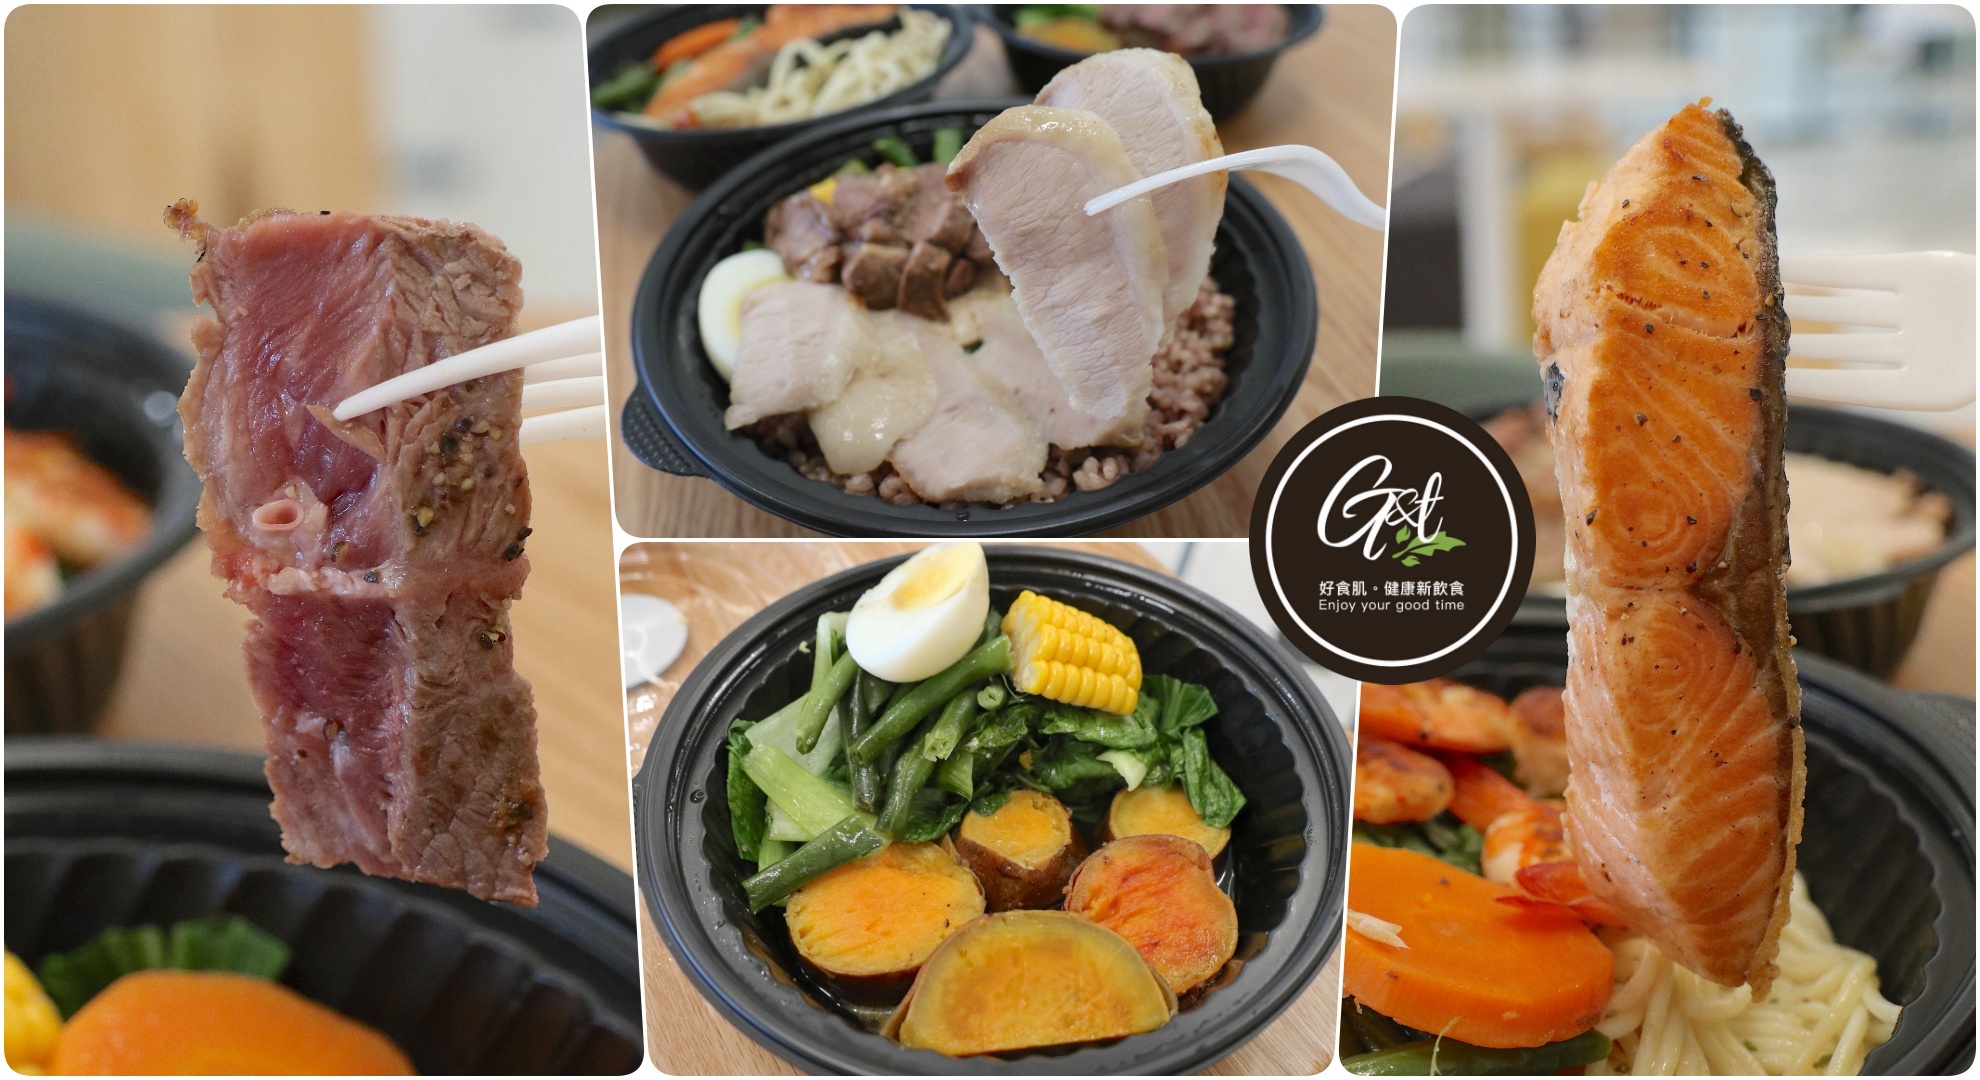 素食,美食,釜山,韓國 @Helena's Blog